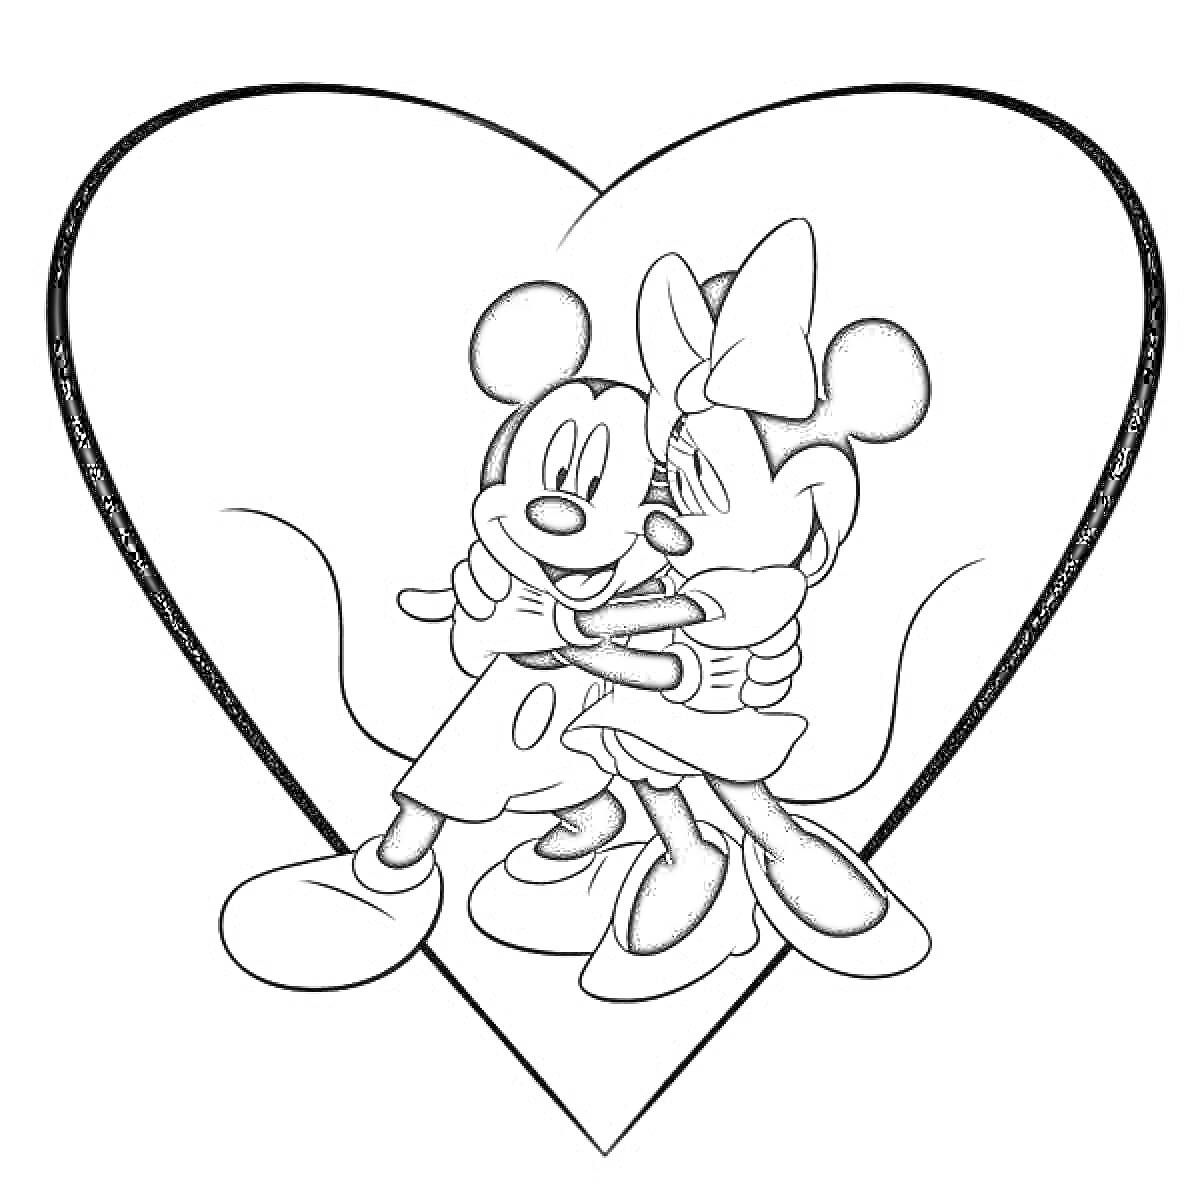 Микки Маус и Минни Маус обнимаются на фоне сердца